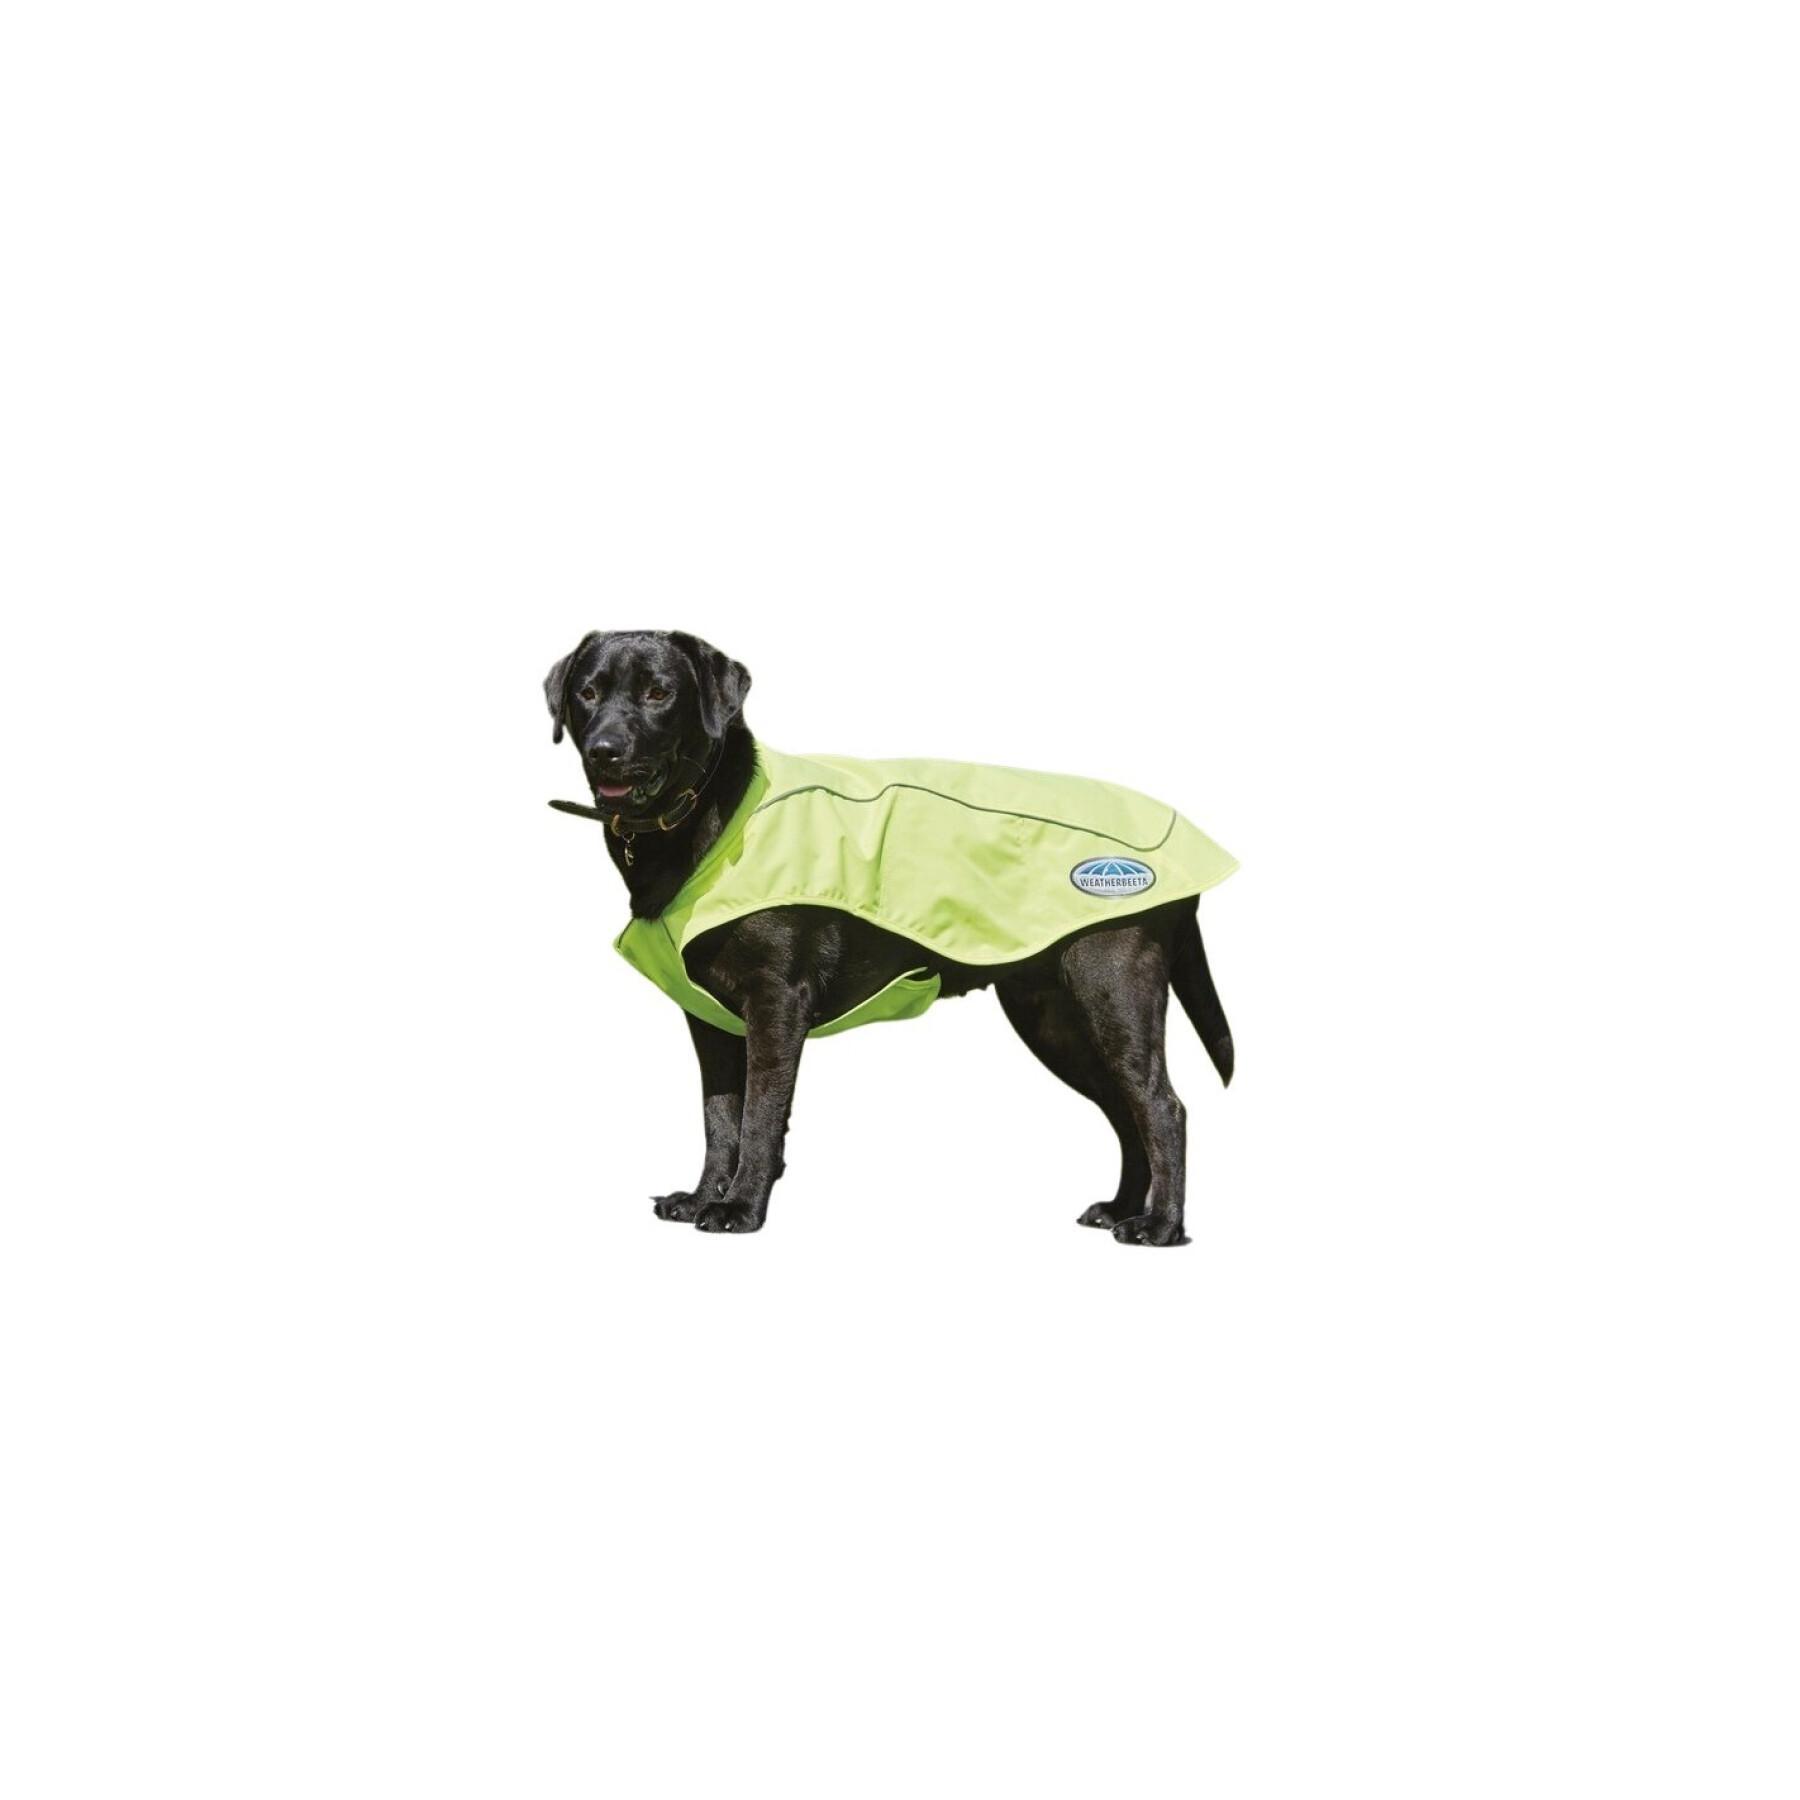 Tren Cartas credenciales Aditivo Manta para perros Weatherbeeta Vision - Mantas - Ropa - Perro